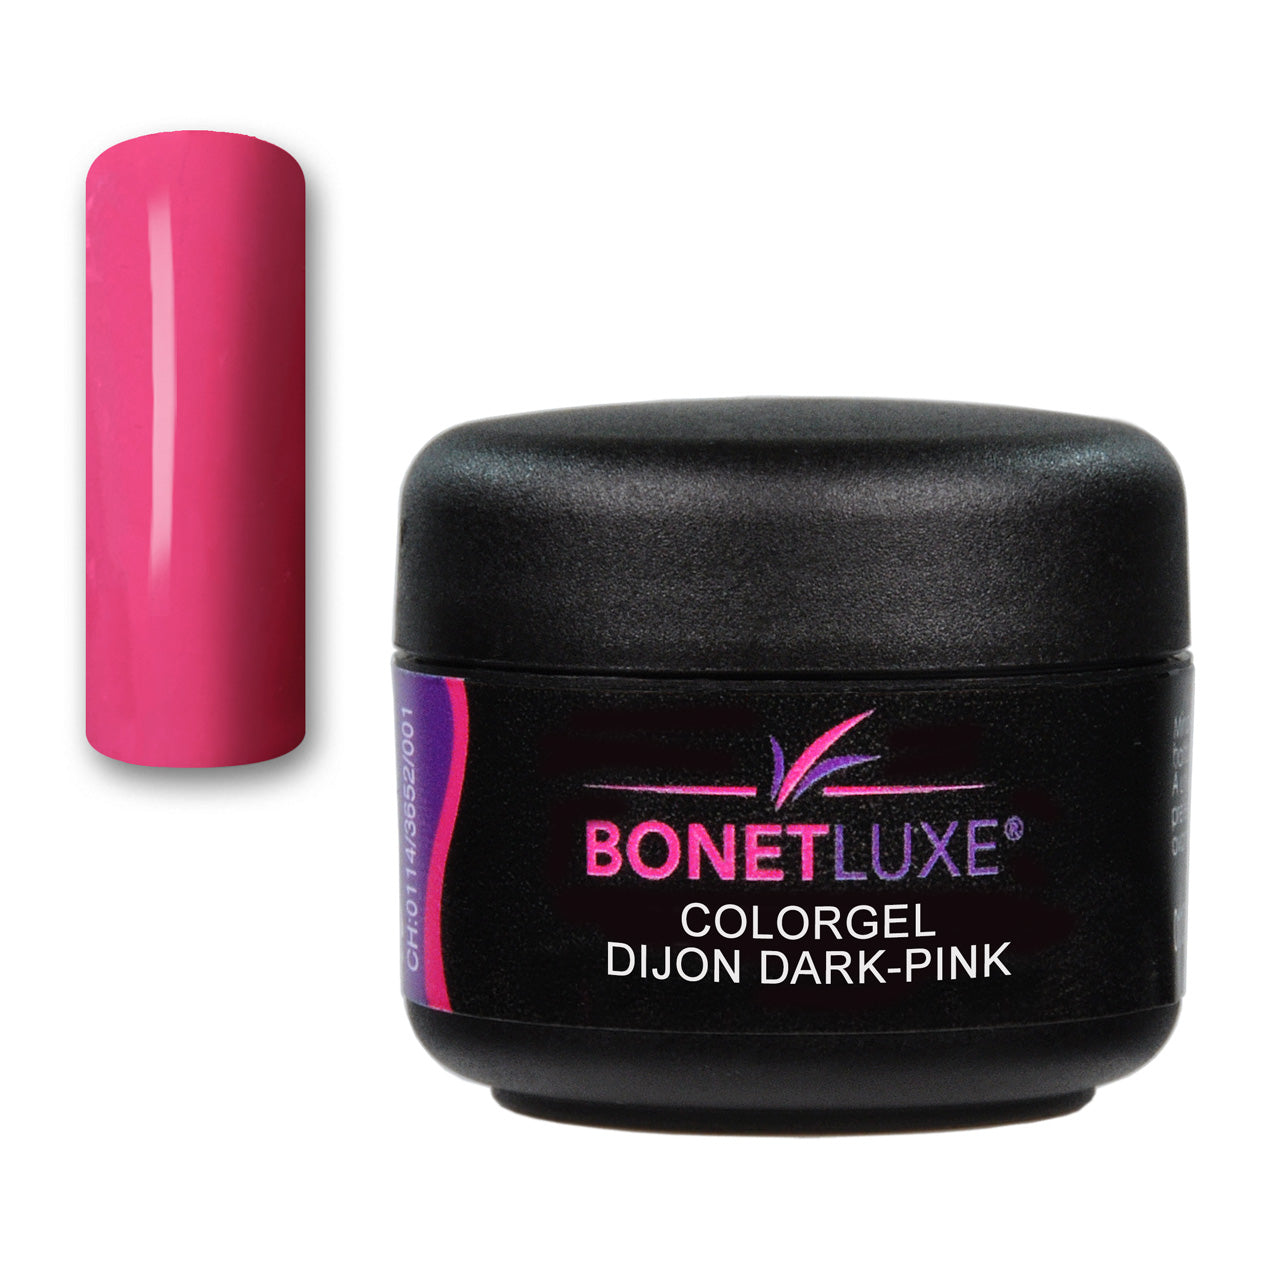 Bonetluxe Colorgel Dijon Dark Pink